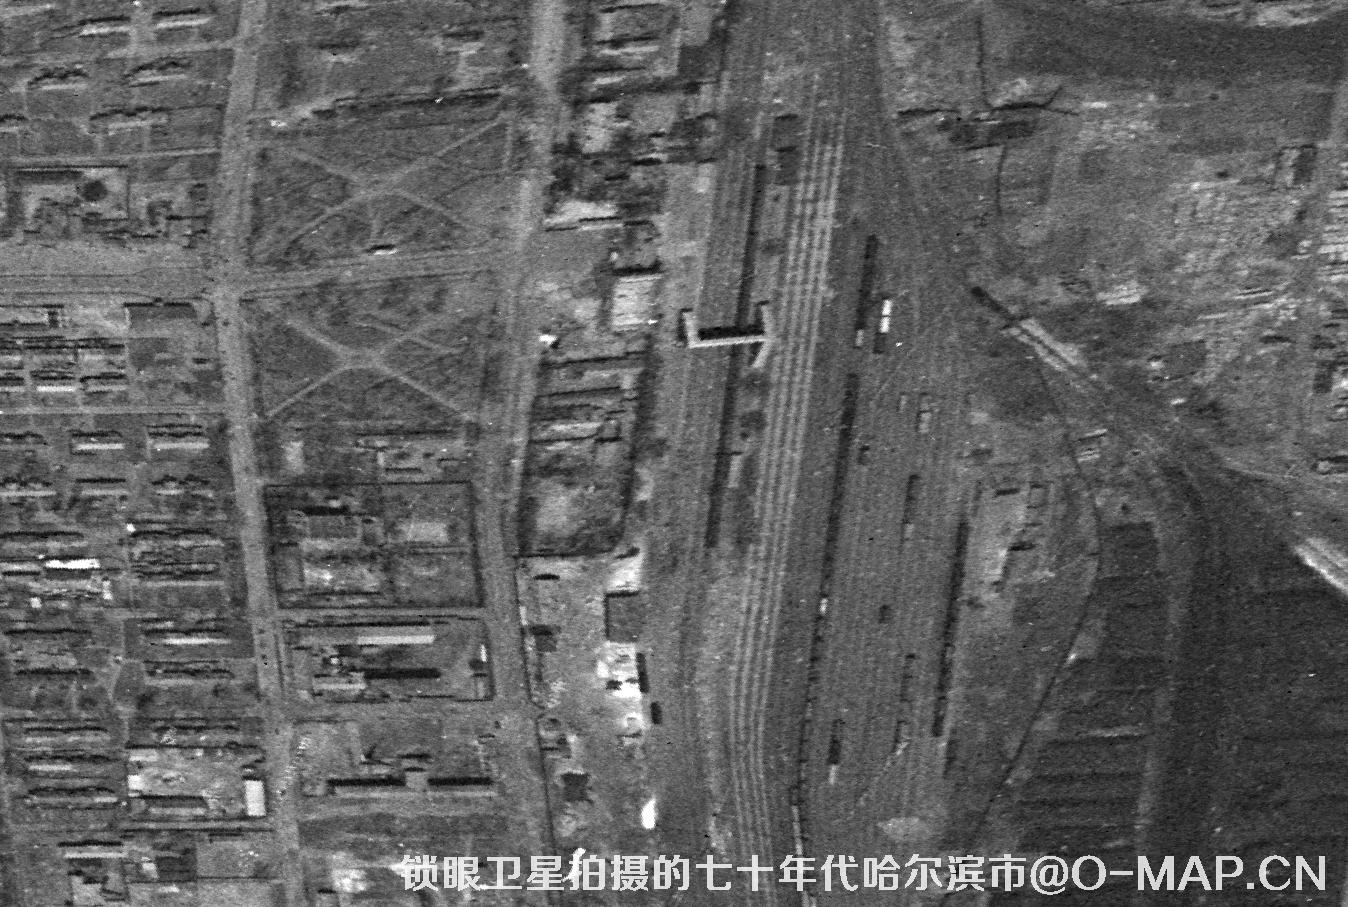 锁眼卫星拍摄的哈尔滨七十年代高清黑白卫星影像图